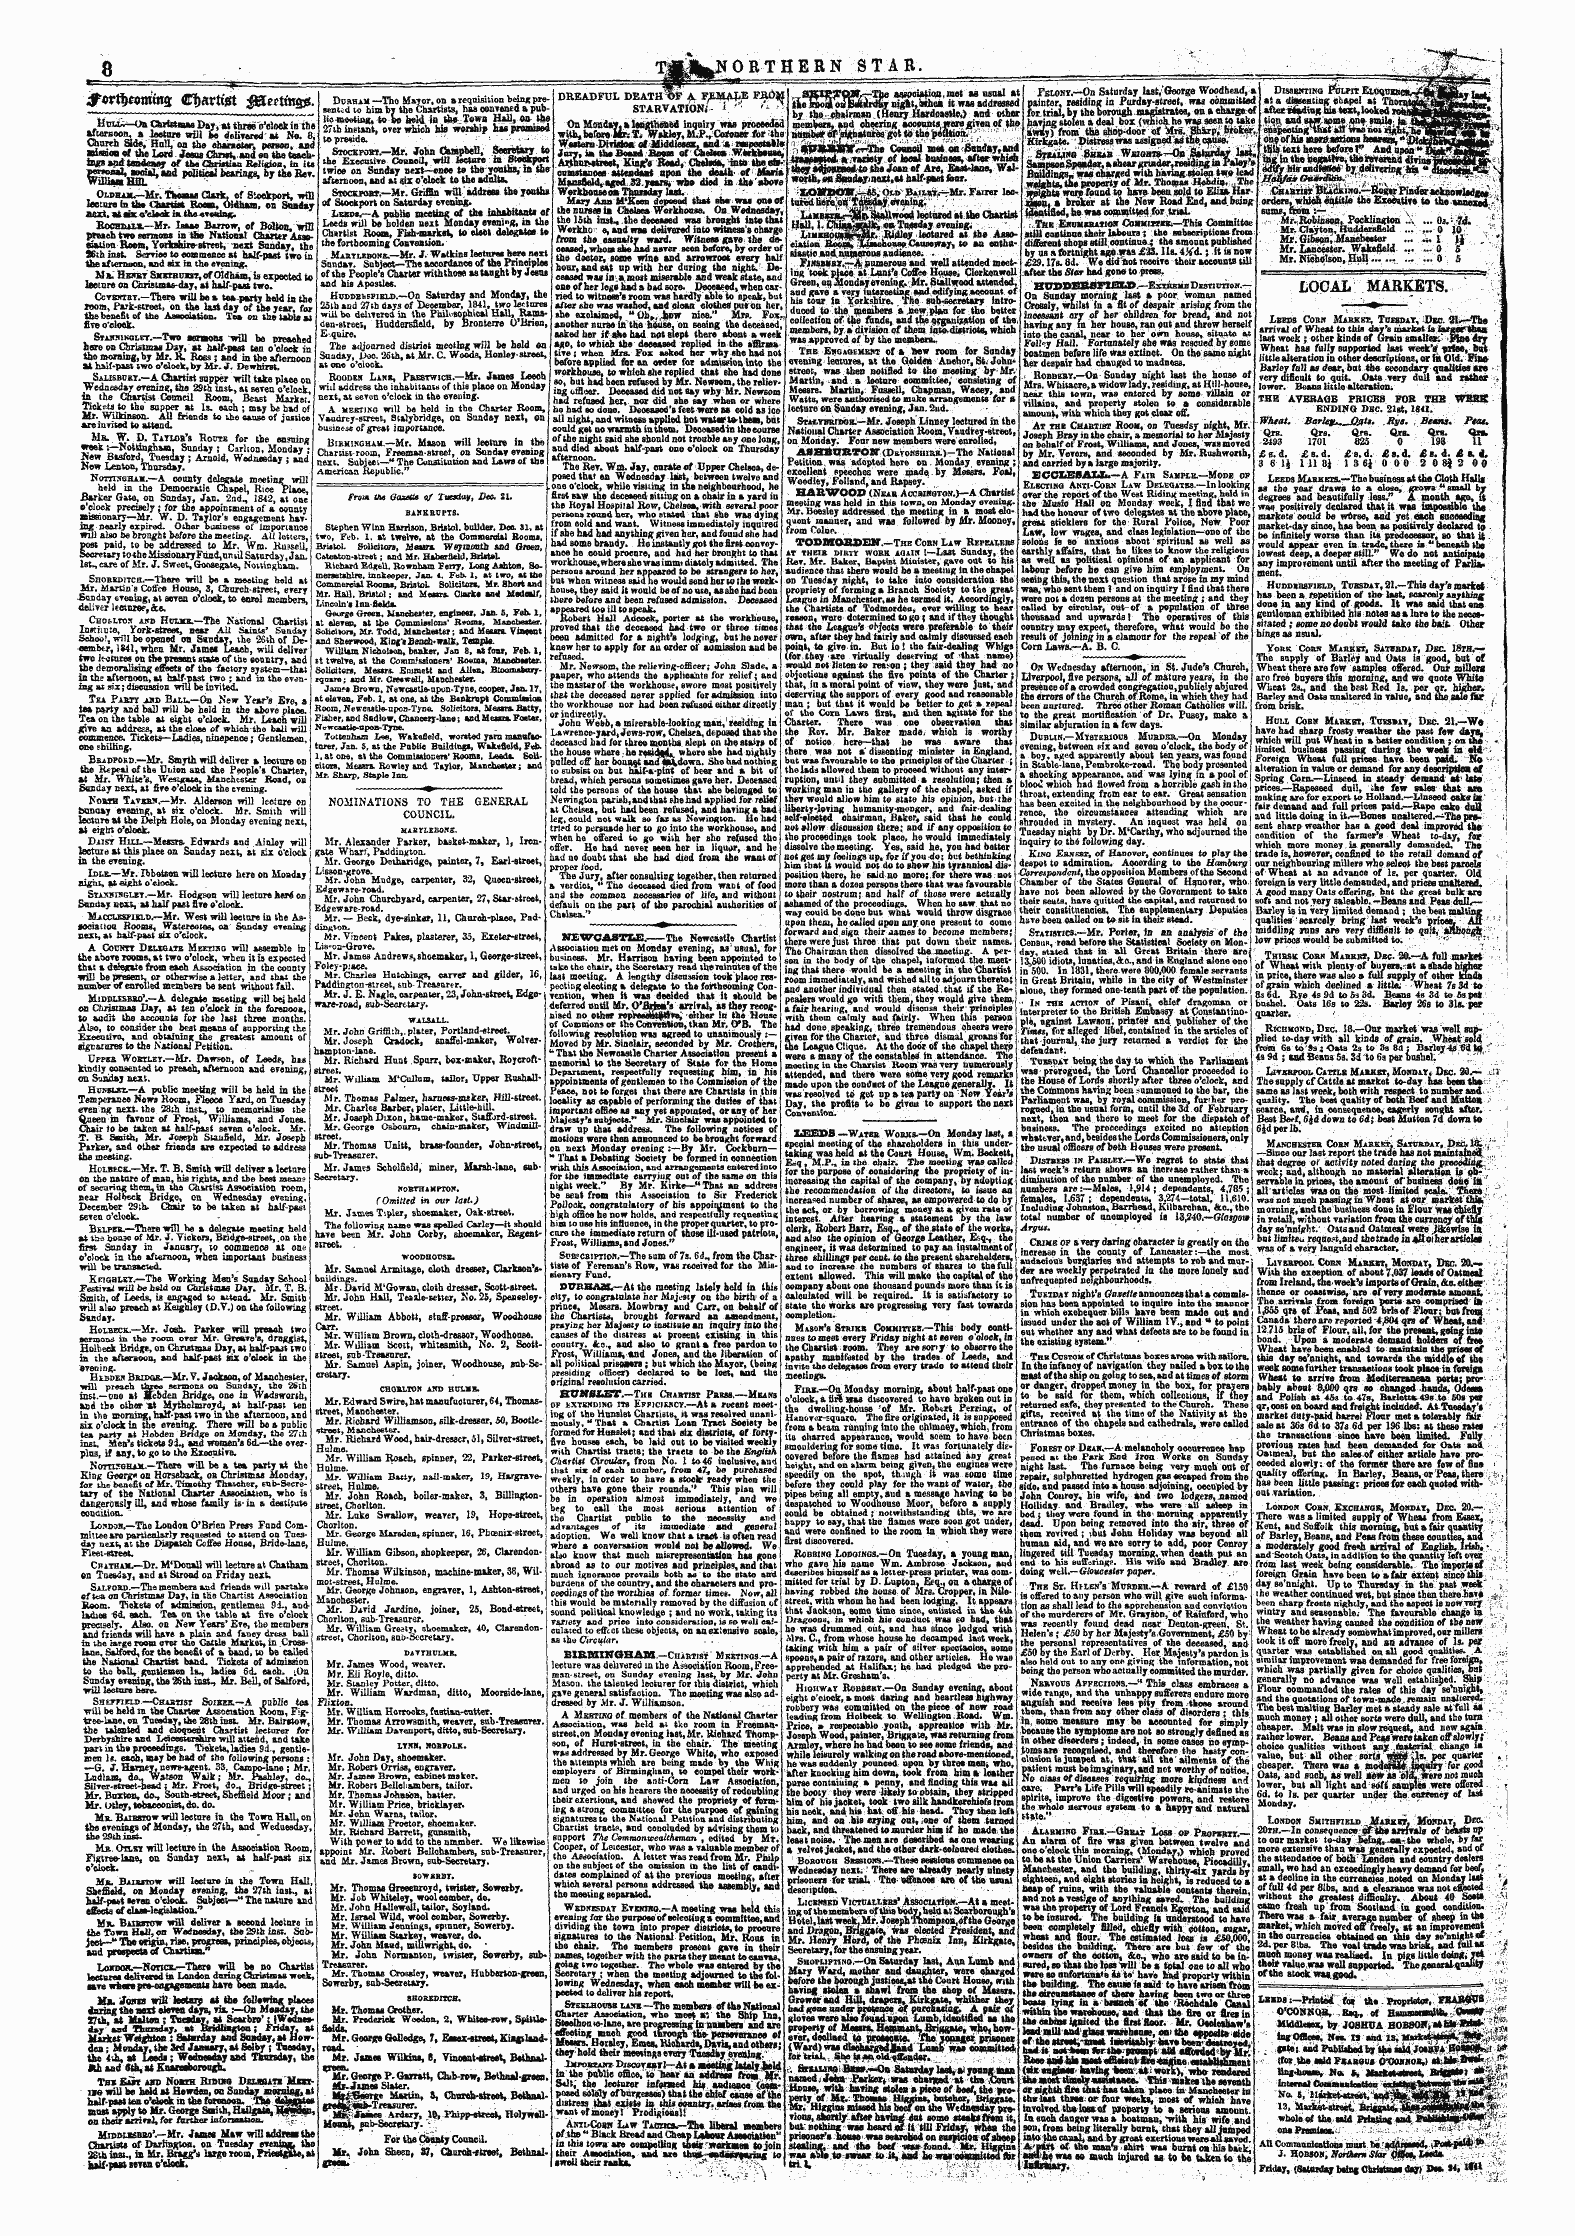 Northern Star (1837-1852): jS F Y, 5th edition - #Wi!)«&Gt;Mi!T2 Cf)«Rtfet $&Ettin